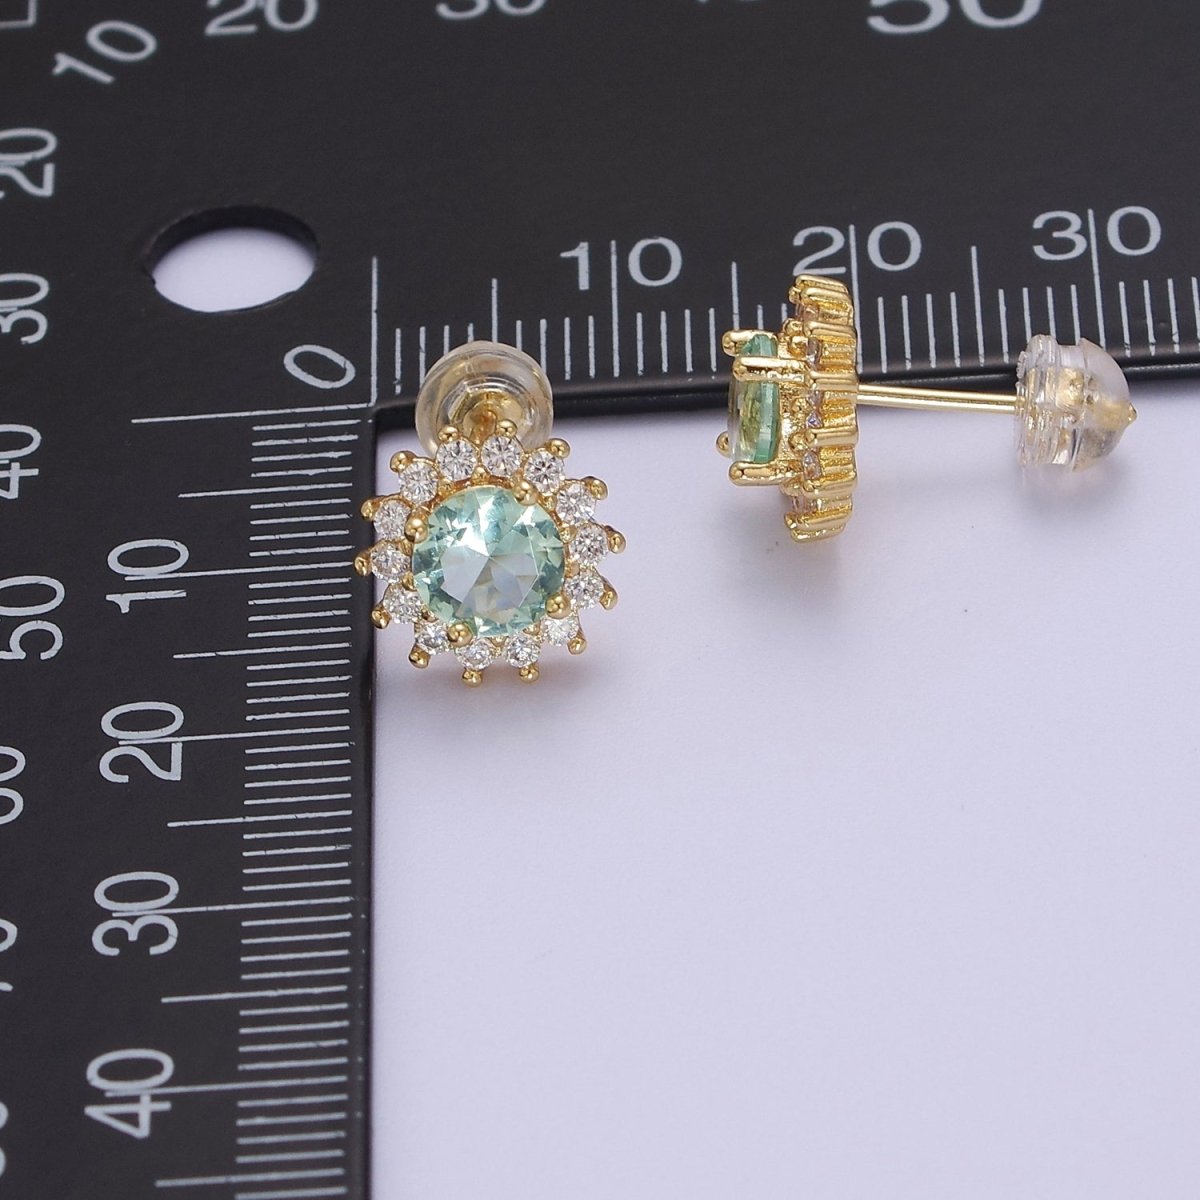 Tiny Zirconia Studs, Dainty Gold Zirconia Earrings, Cz Stud Earrings, Sun Earrings, Tiny Diamond Stud Earrings, Small Gold Earring V-104 - DLUXCA